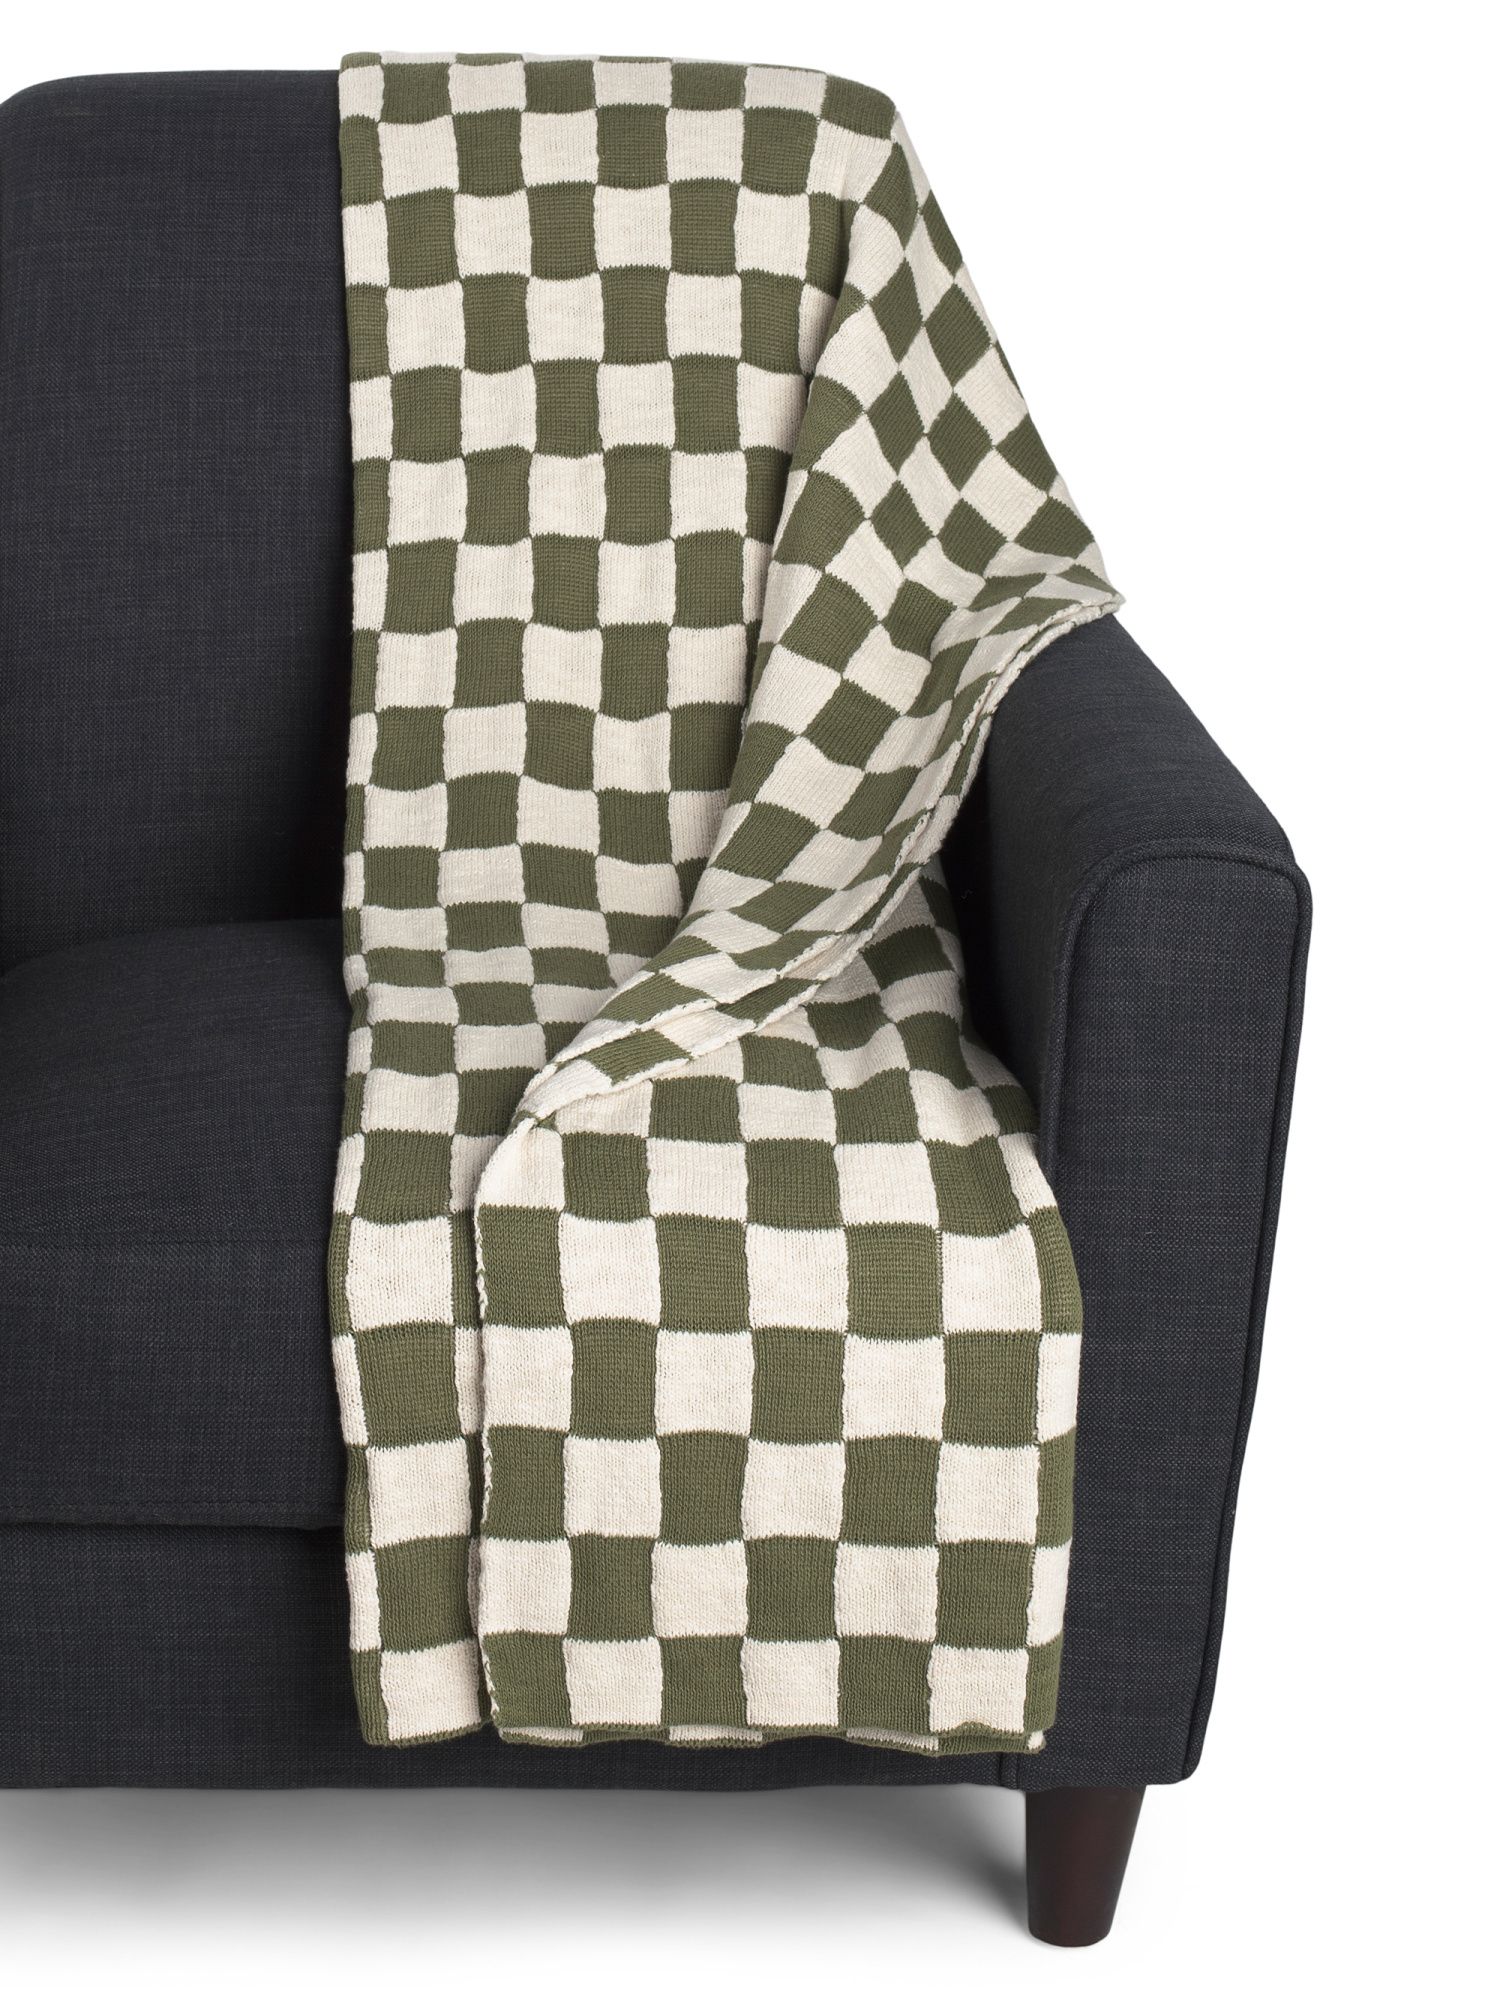 Checkered Knit Throw | TJ Maxx